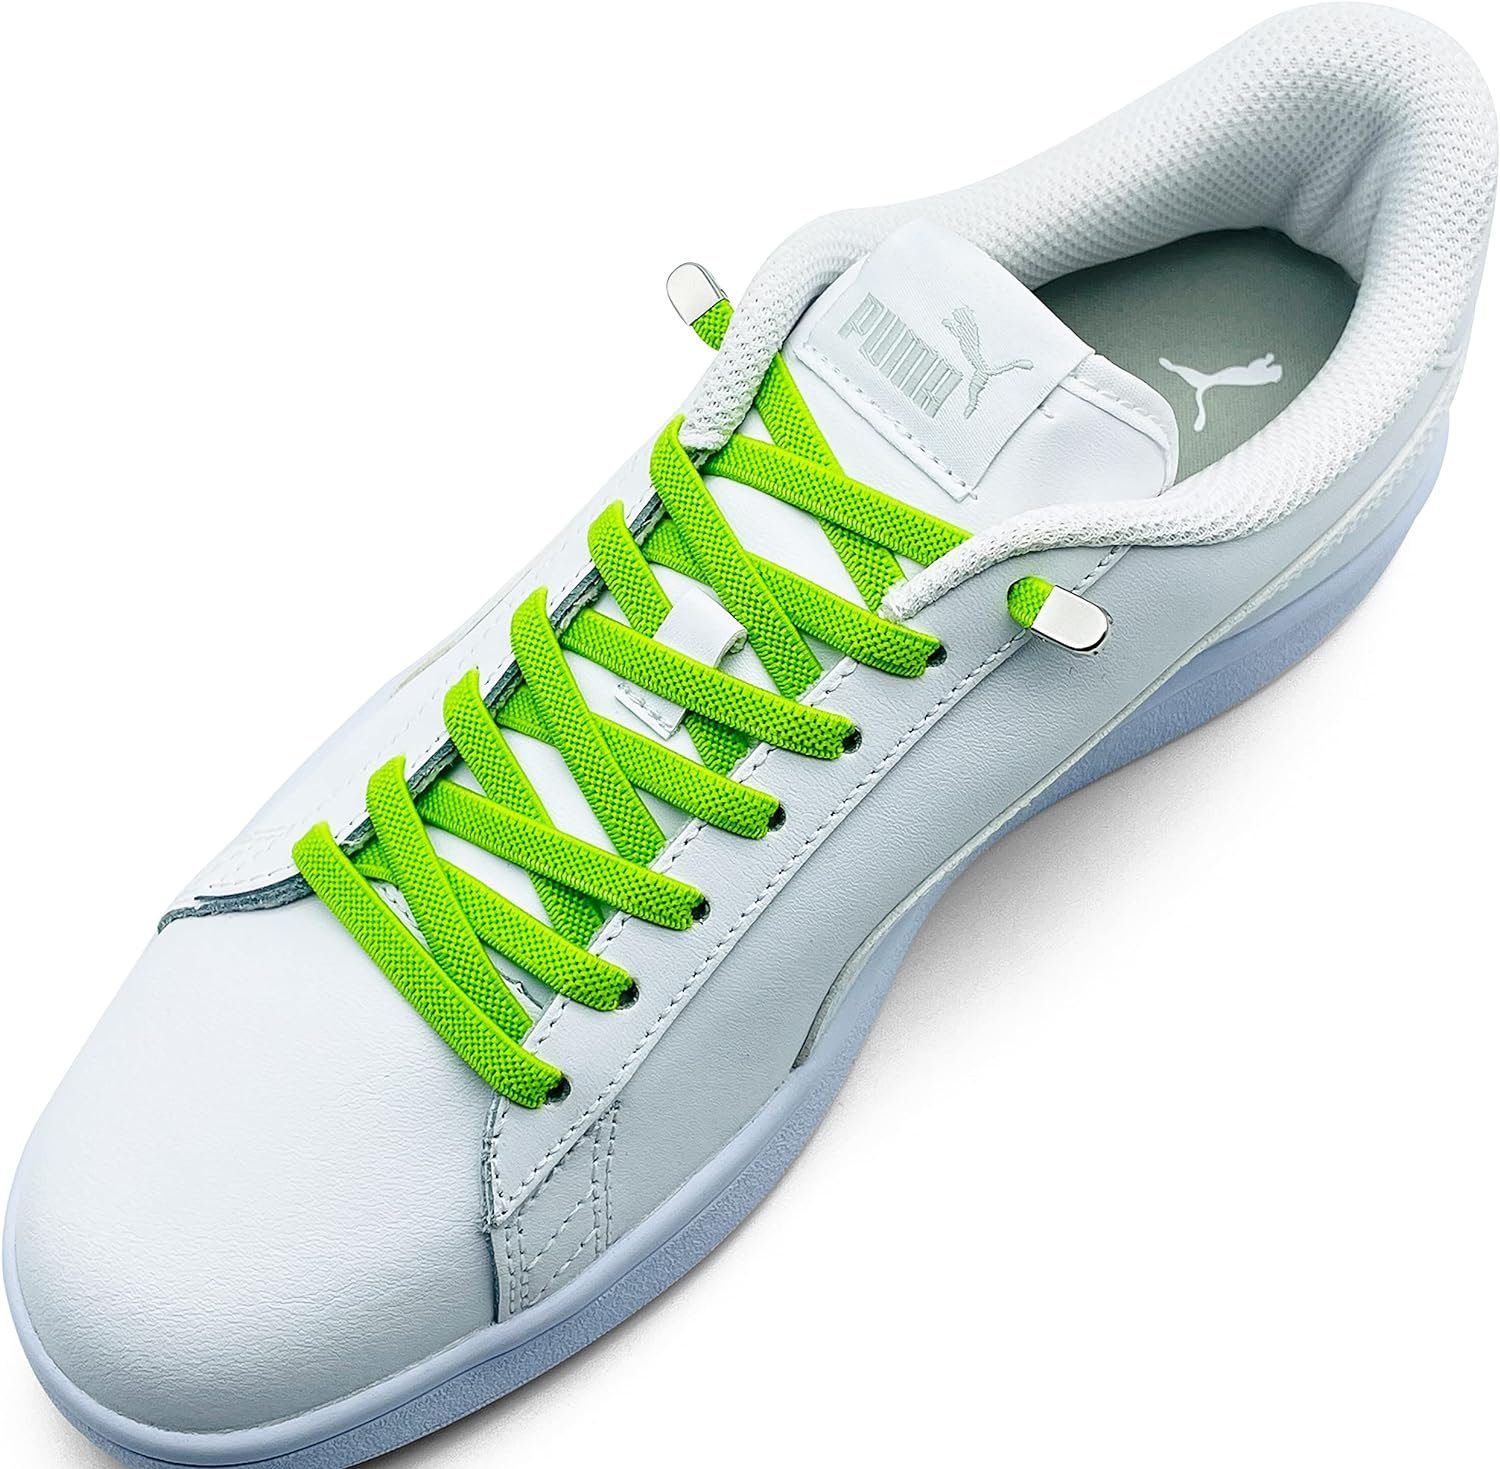 Schnürsenkel Schnürsenkel inkl. (Clips) silber apple Stück - Enden Clips, in für ELANOX green mit 4 Schuhe Paar St. elastische 2 8